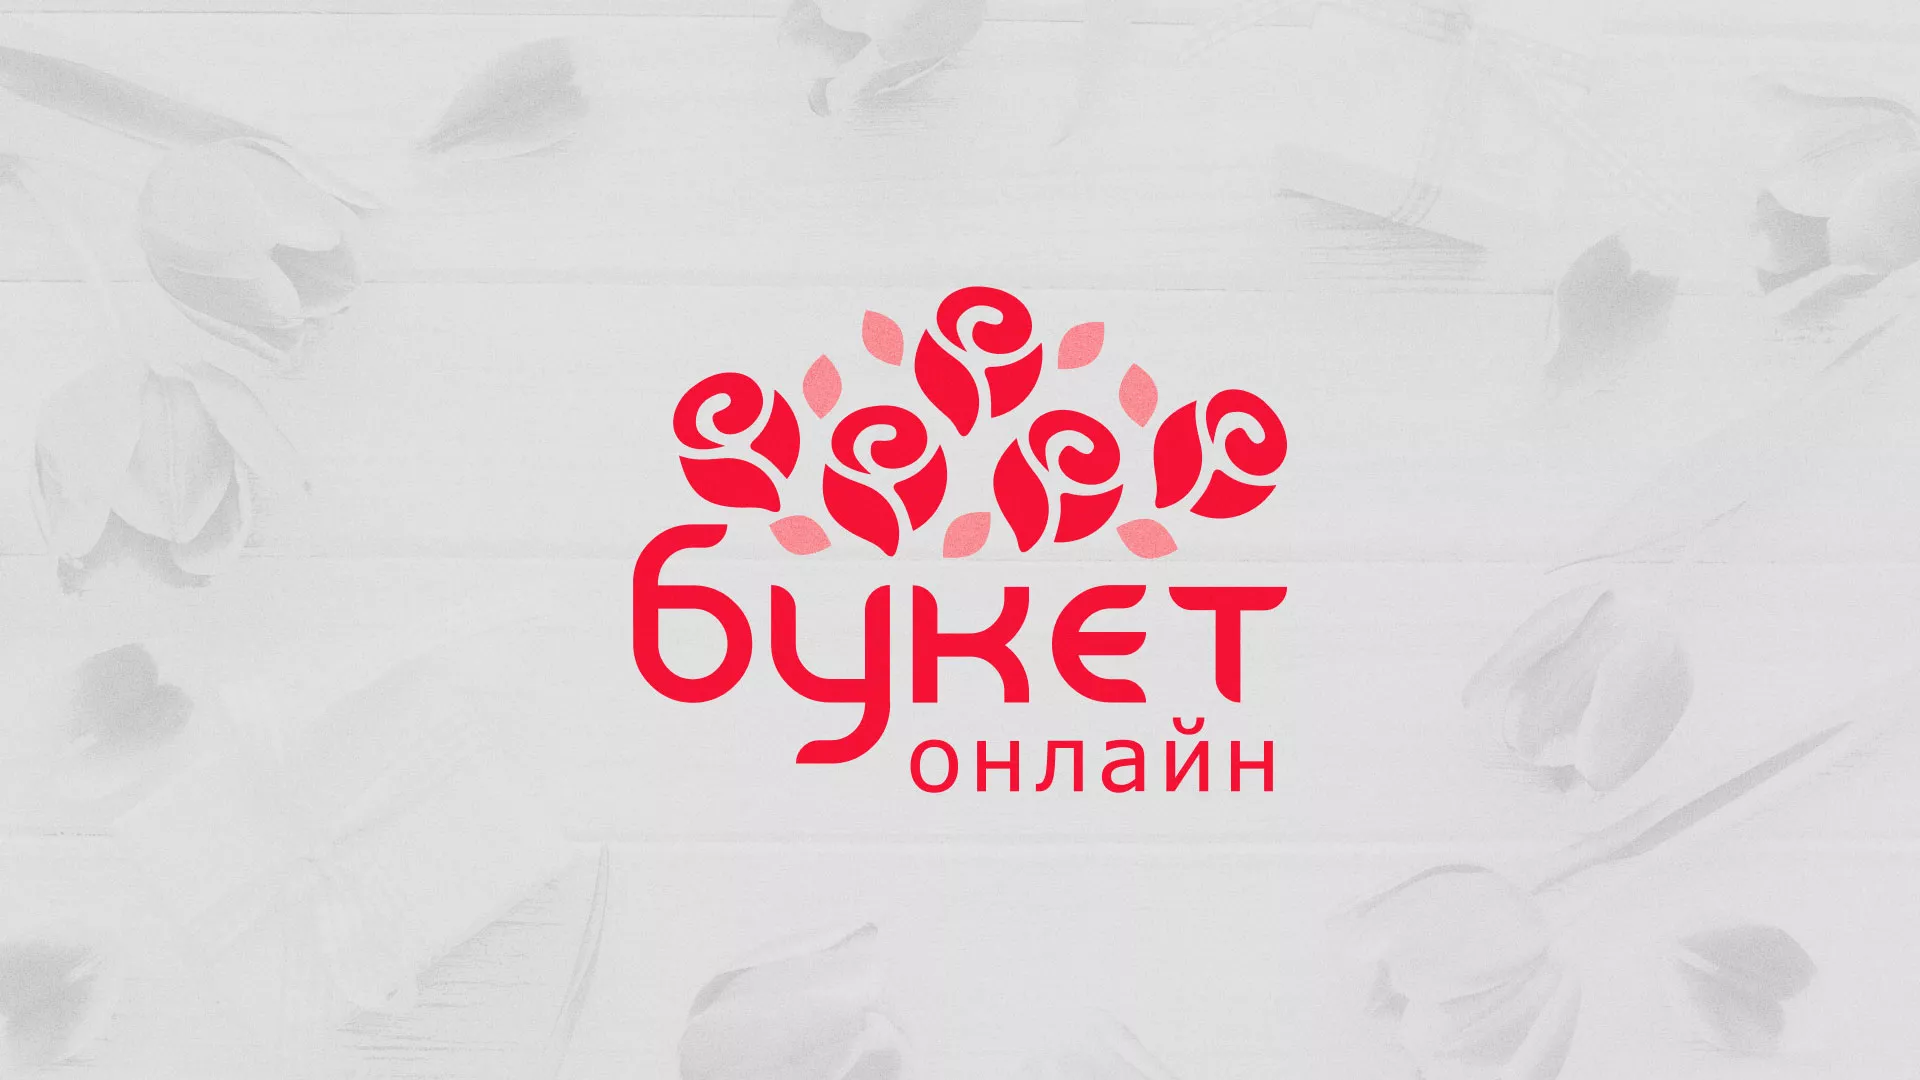 Создание интернет-магазина «Букет-онлайн» по цветам в Азове